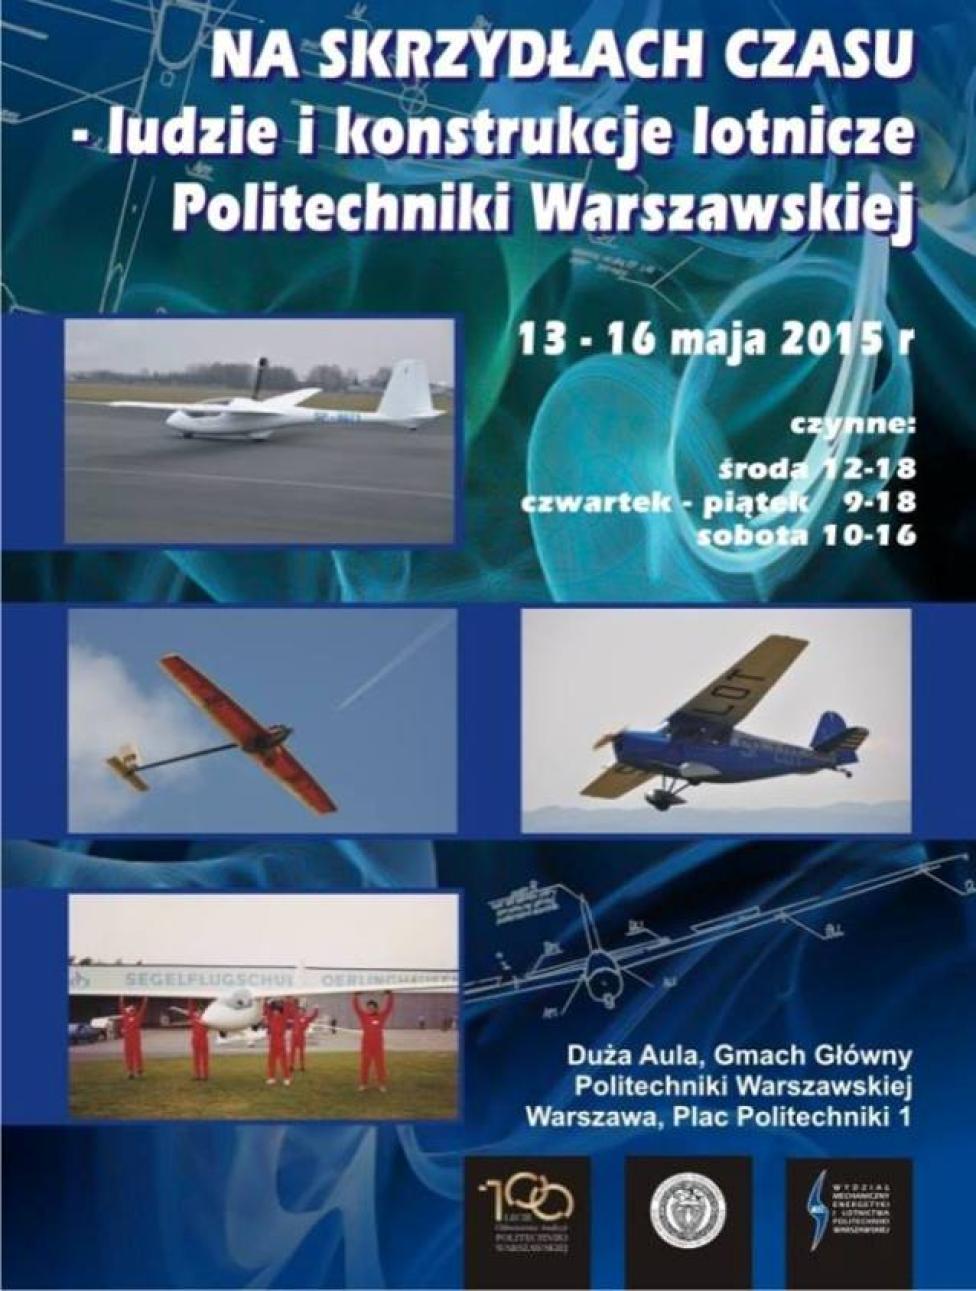 Na skrzydłach czasu - ludzie i konstrukcje lotnicze Politechniki Warszawskiej